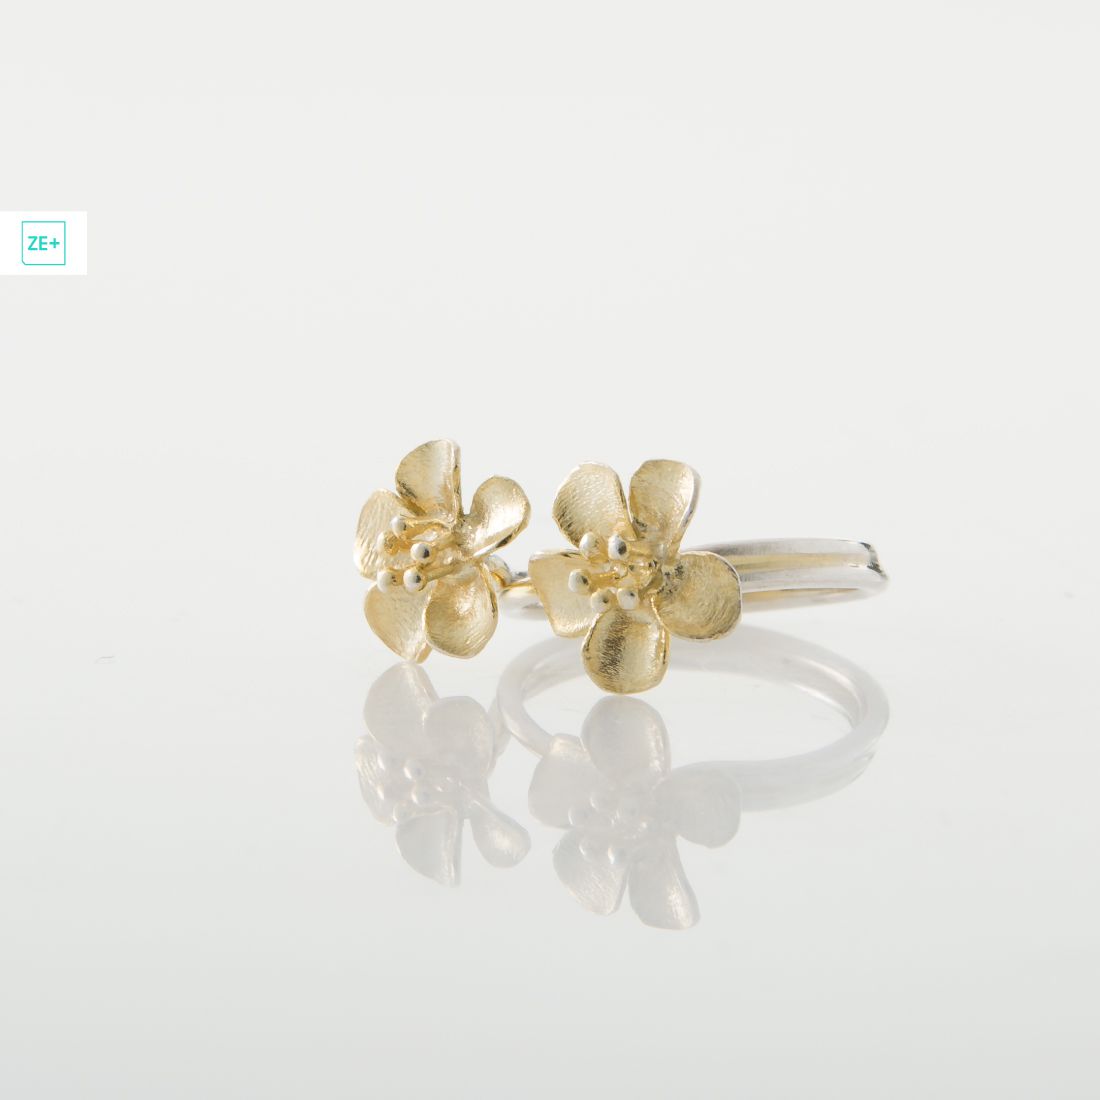 2 aranyvirágos Pilisi len ezüst gyűrű